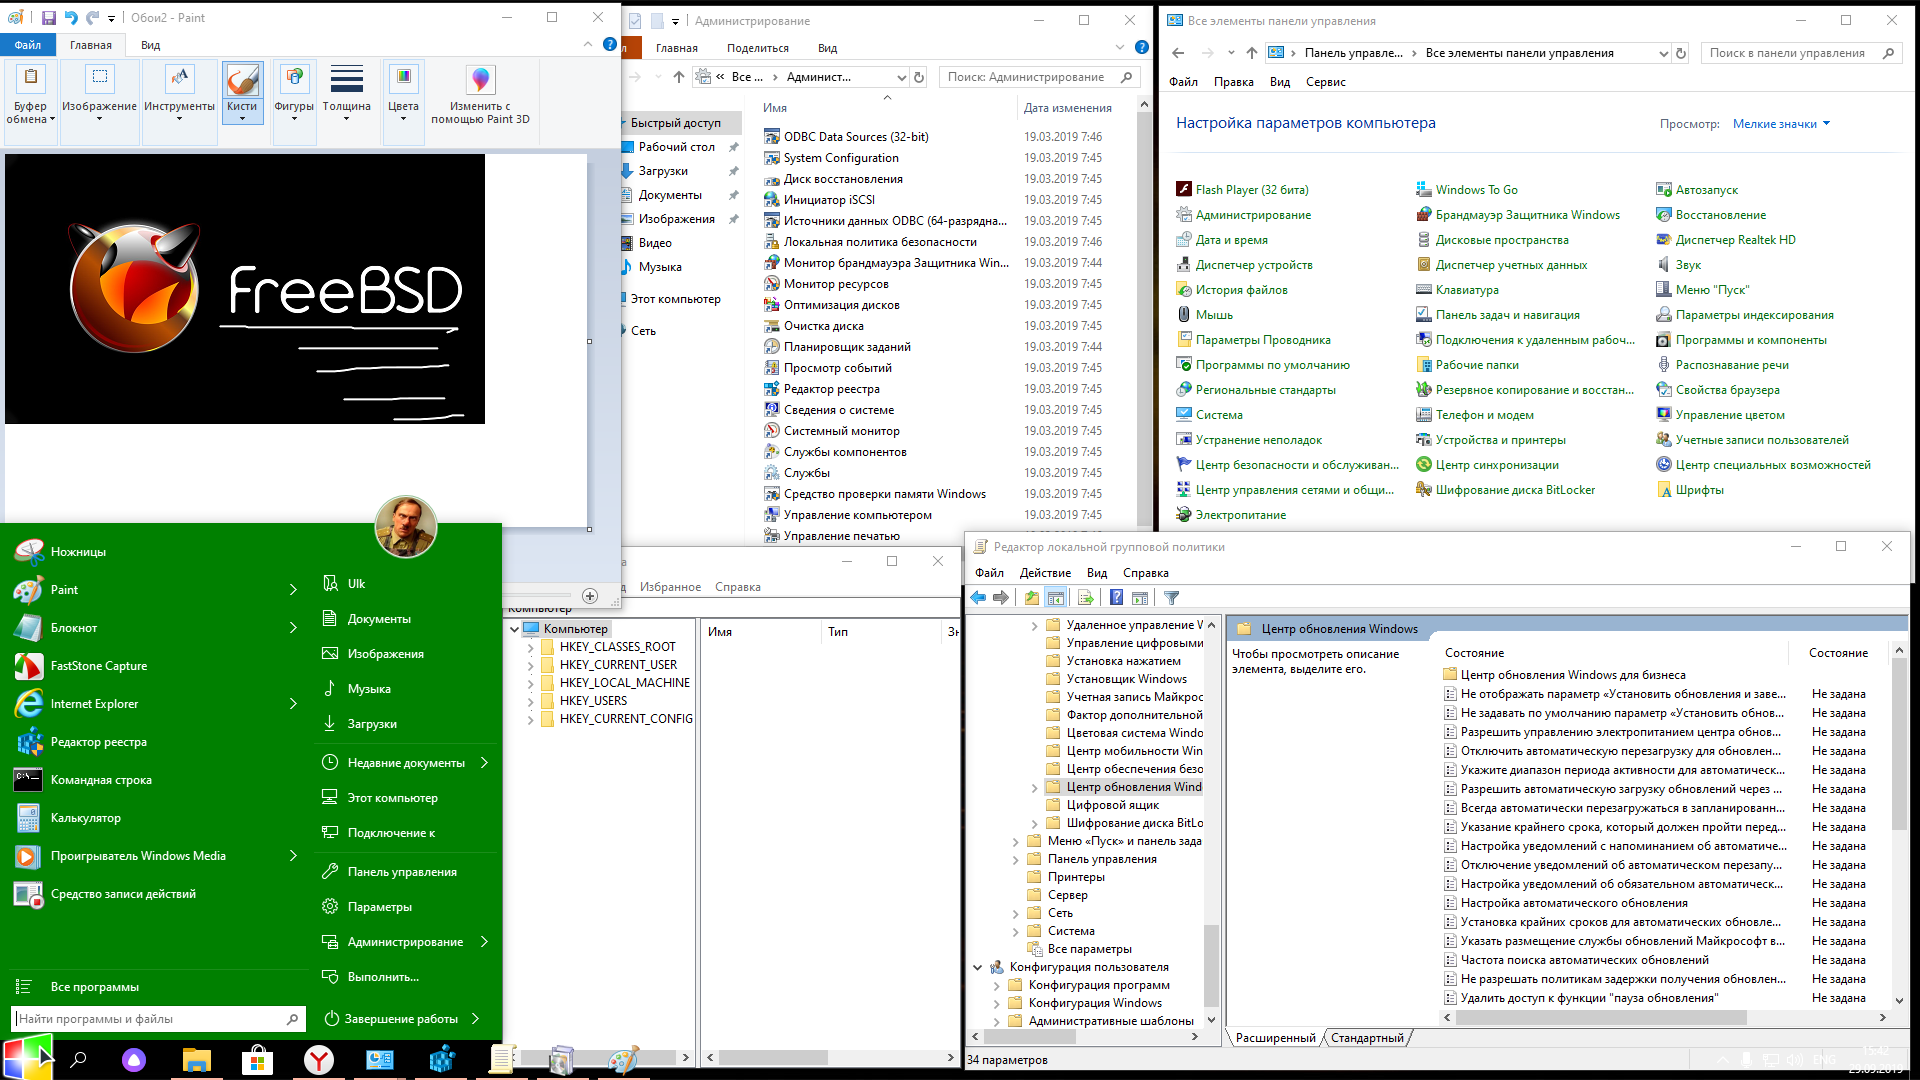 Сборник нужных программ. Программы и компоненты Скриншоты виндовс 10. Антишпионские программы для Windows 10. Основные программы для компьютера Windows 10. Windows 10 Pro 1903.